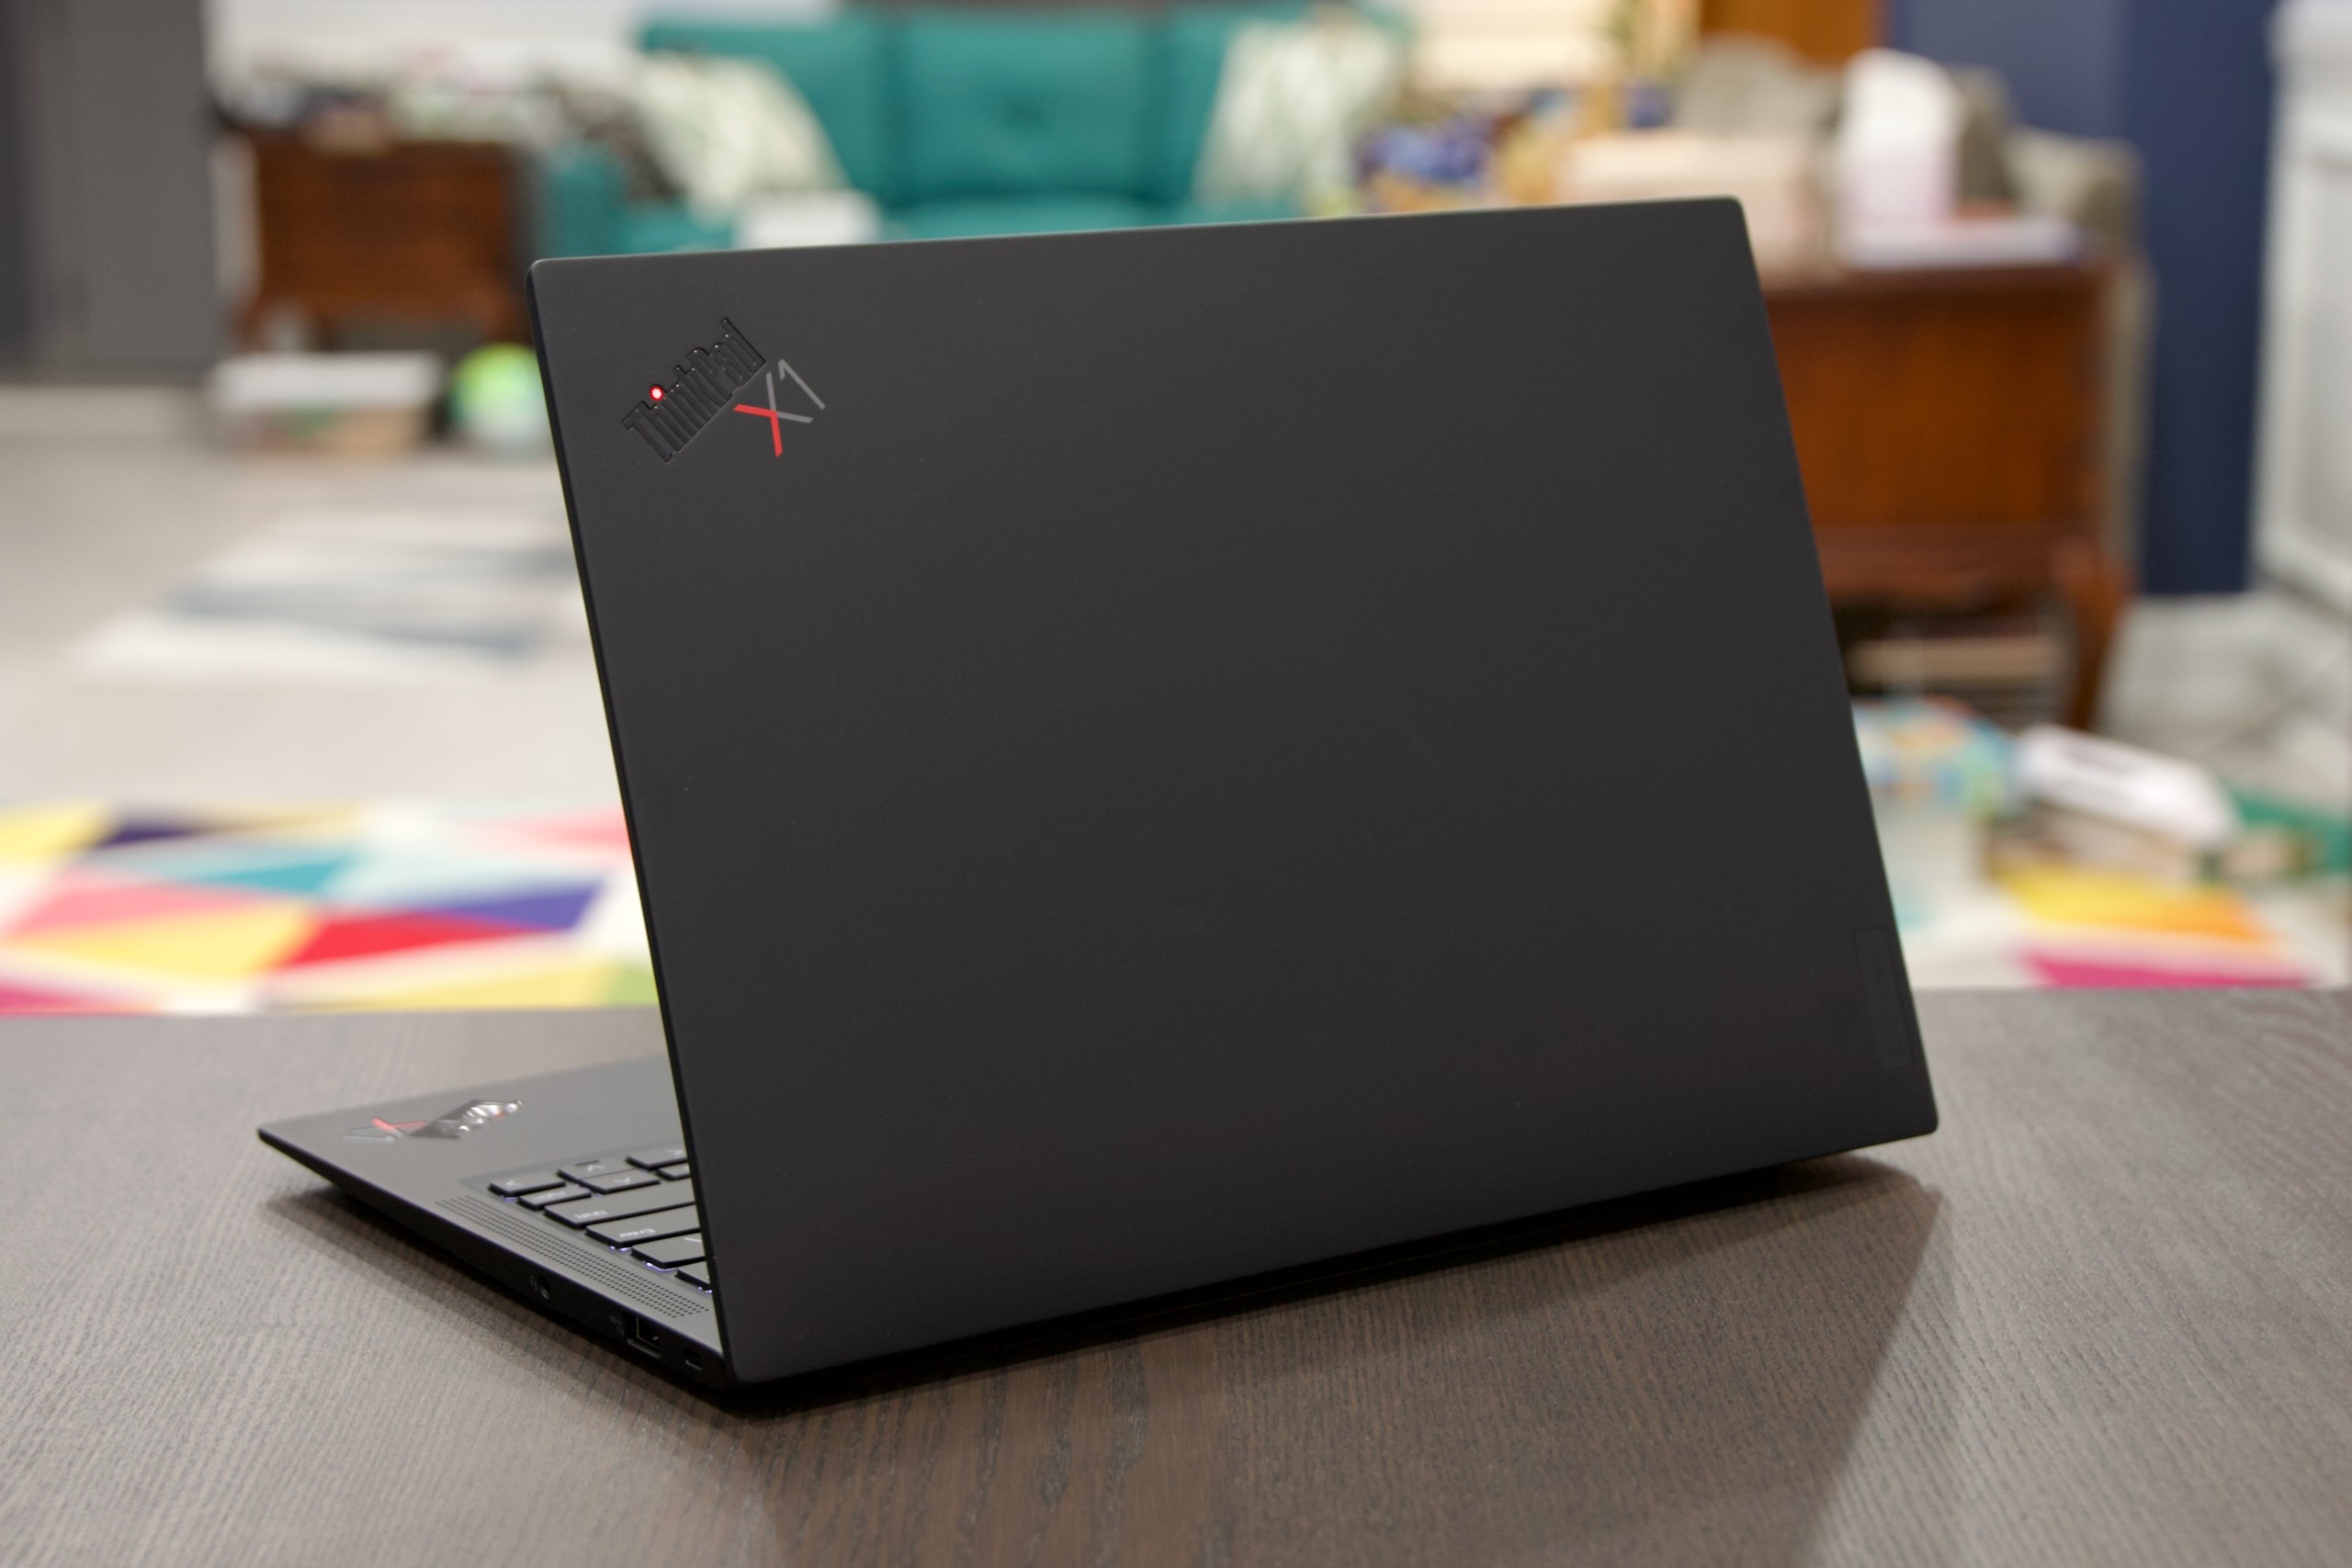 Le ThinkPad X1 Carbon fait partie d'une longue lignée d'ordinateurs portables professionnels noirs discrets. 